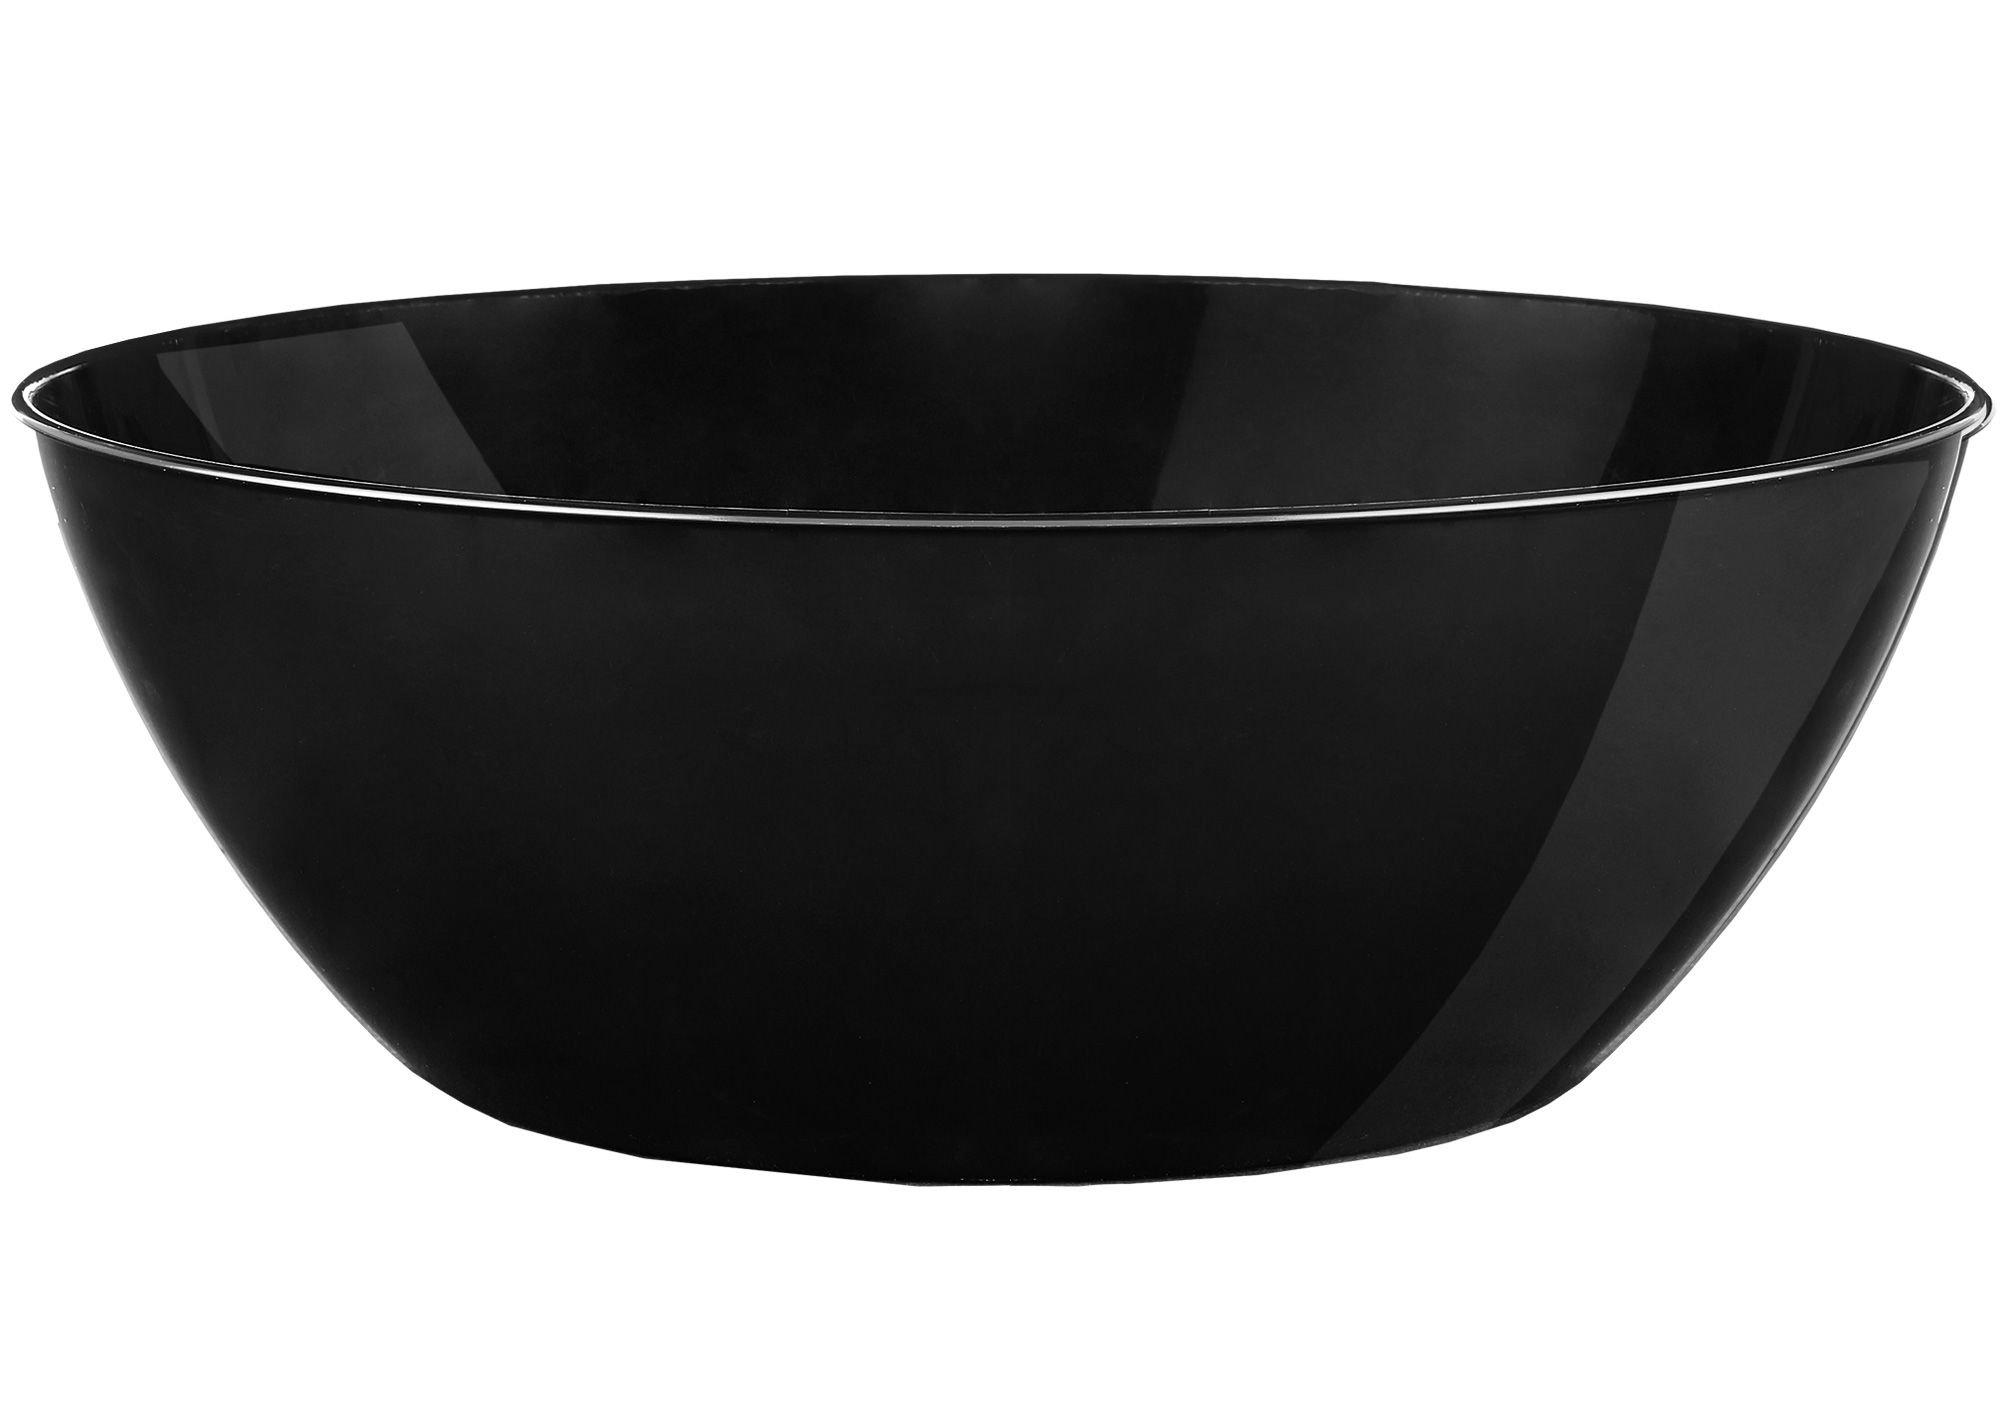 160 oz Square Black Plastic Large Modern Serving Bowl - 11 x 11